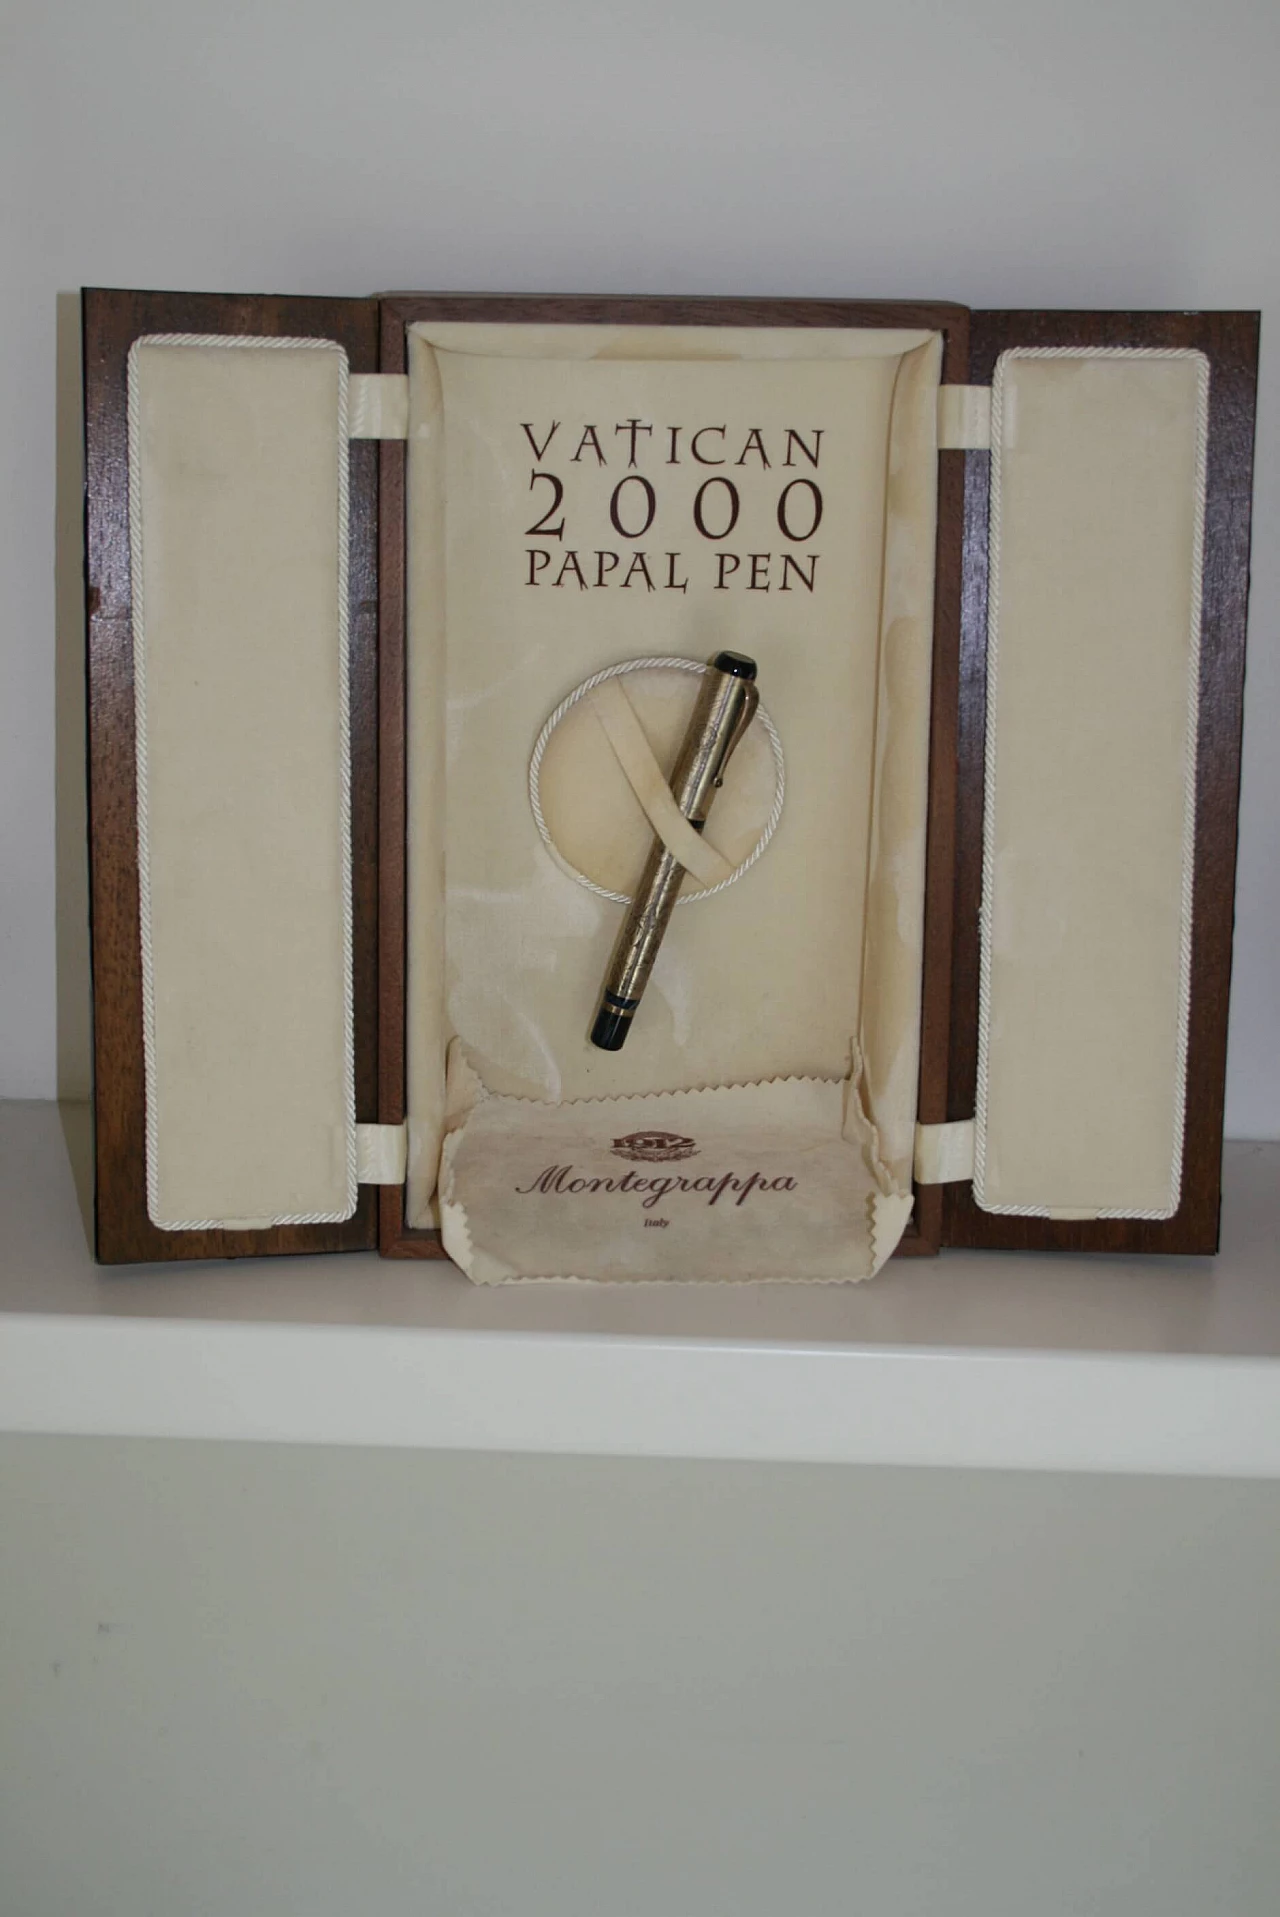 Montegrappa Fountain Pen Vatican 2000 Papal Pen 1067274